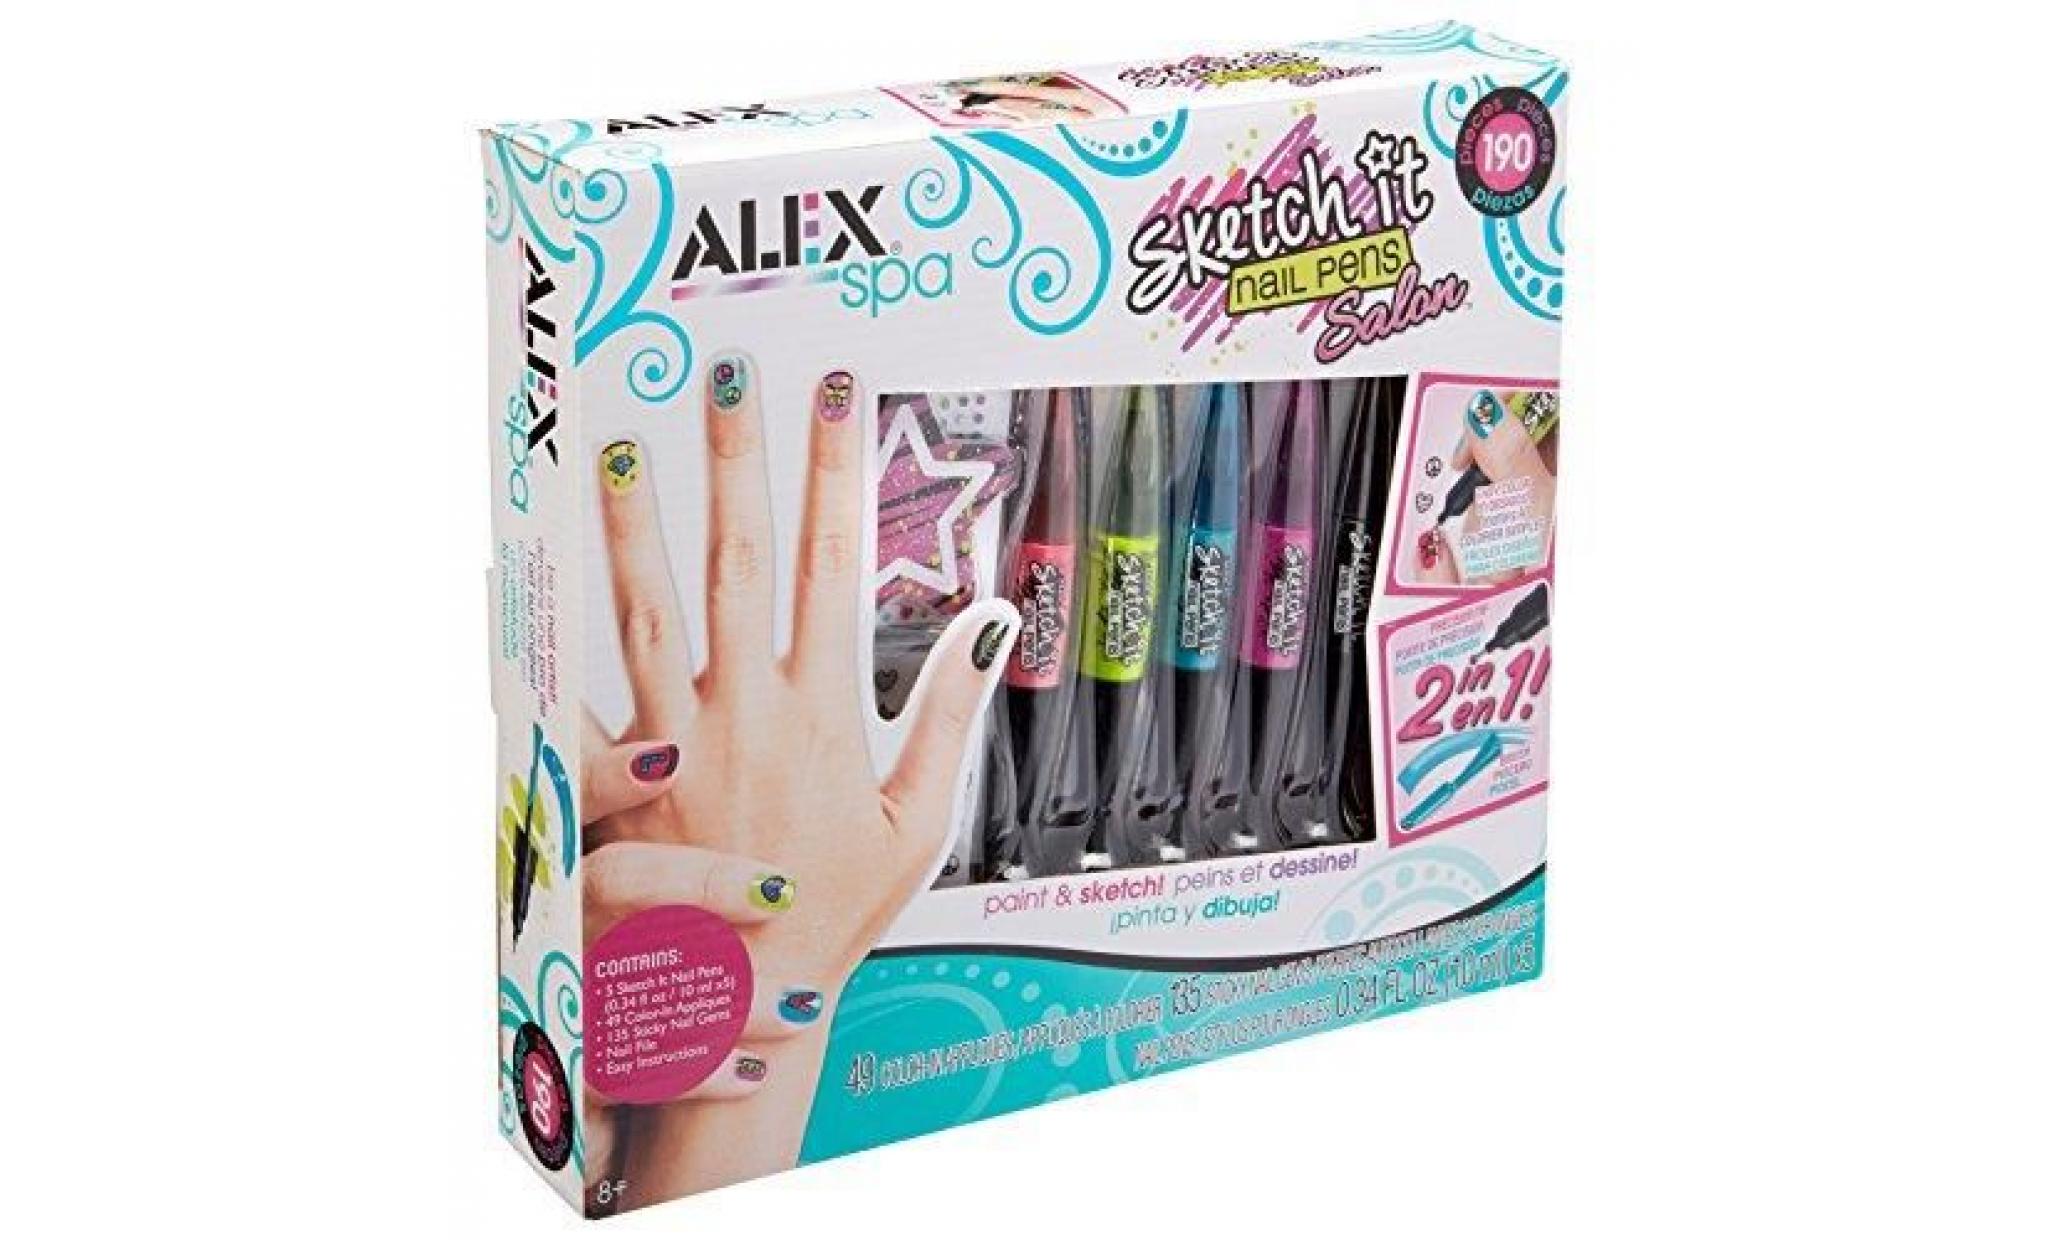 2. ALEX Spa Sketch It Nail Pens Salon - wide 2